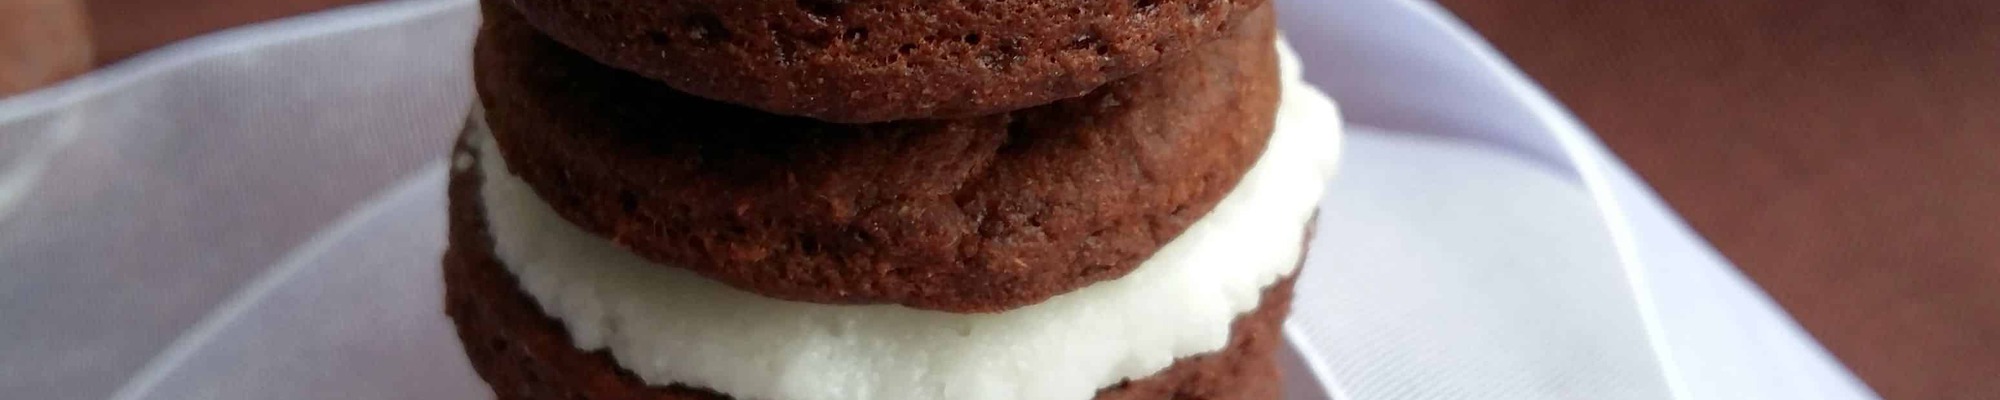 Populárne a chutné Oreo sušienky na zdravý spôsob (Recept)